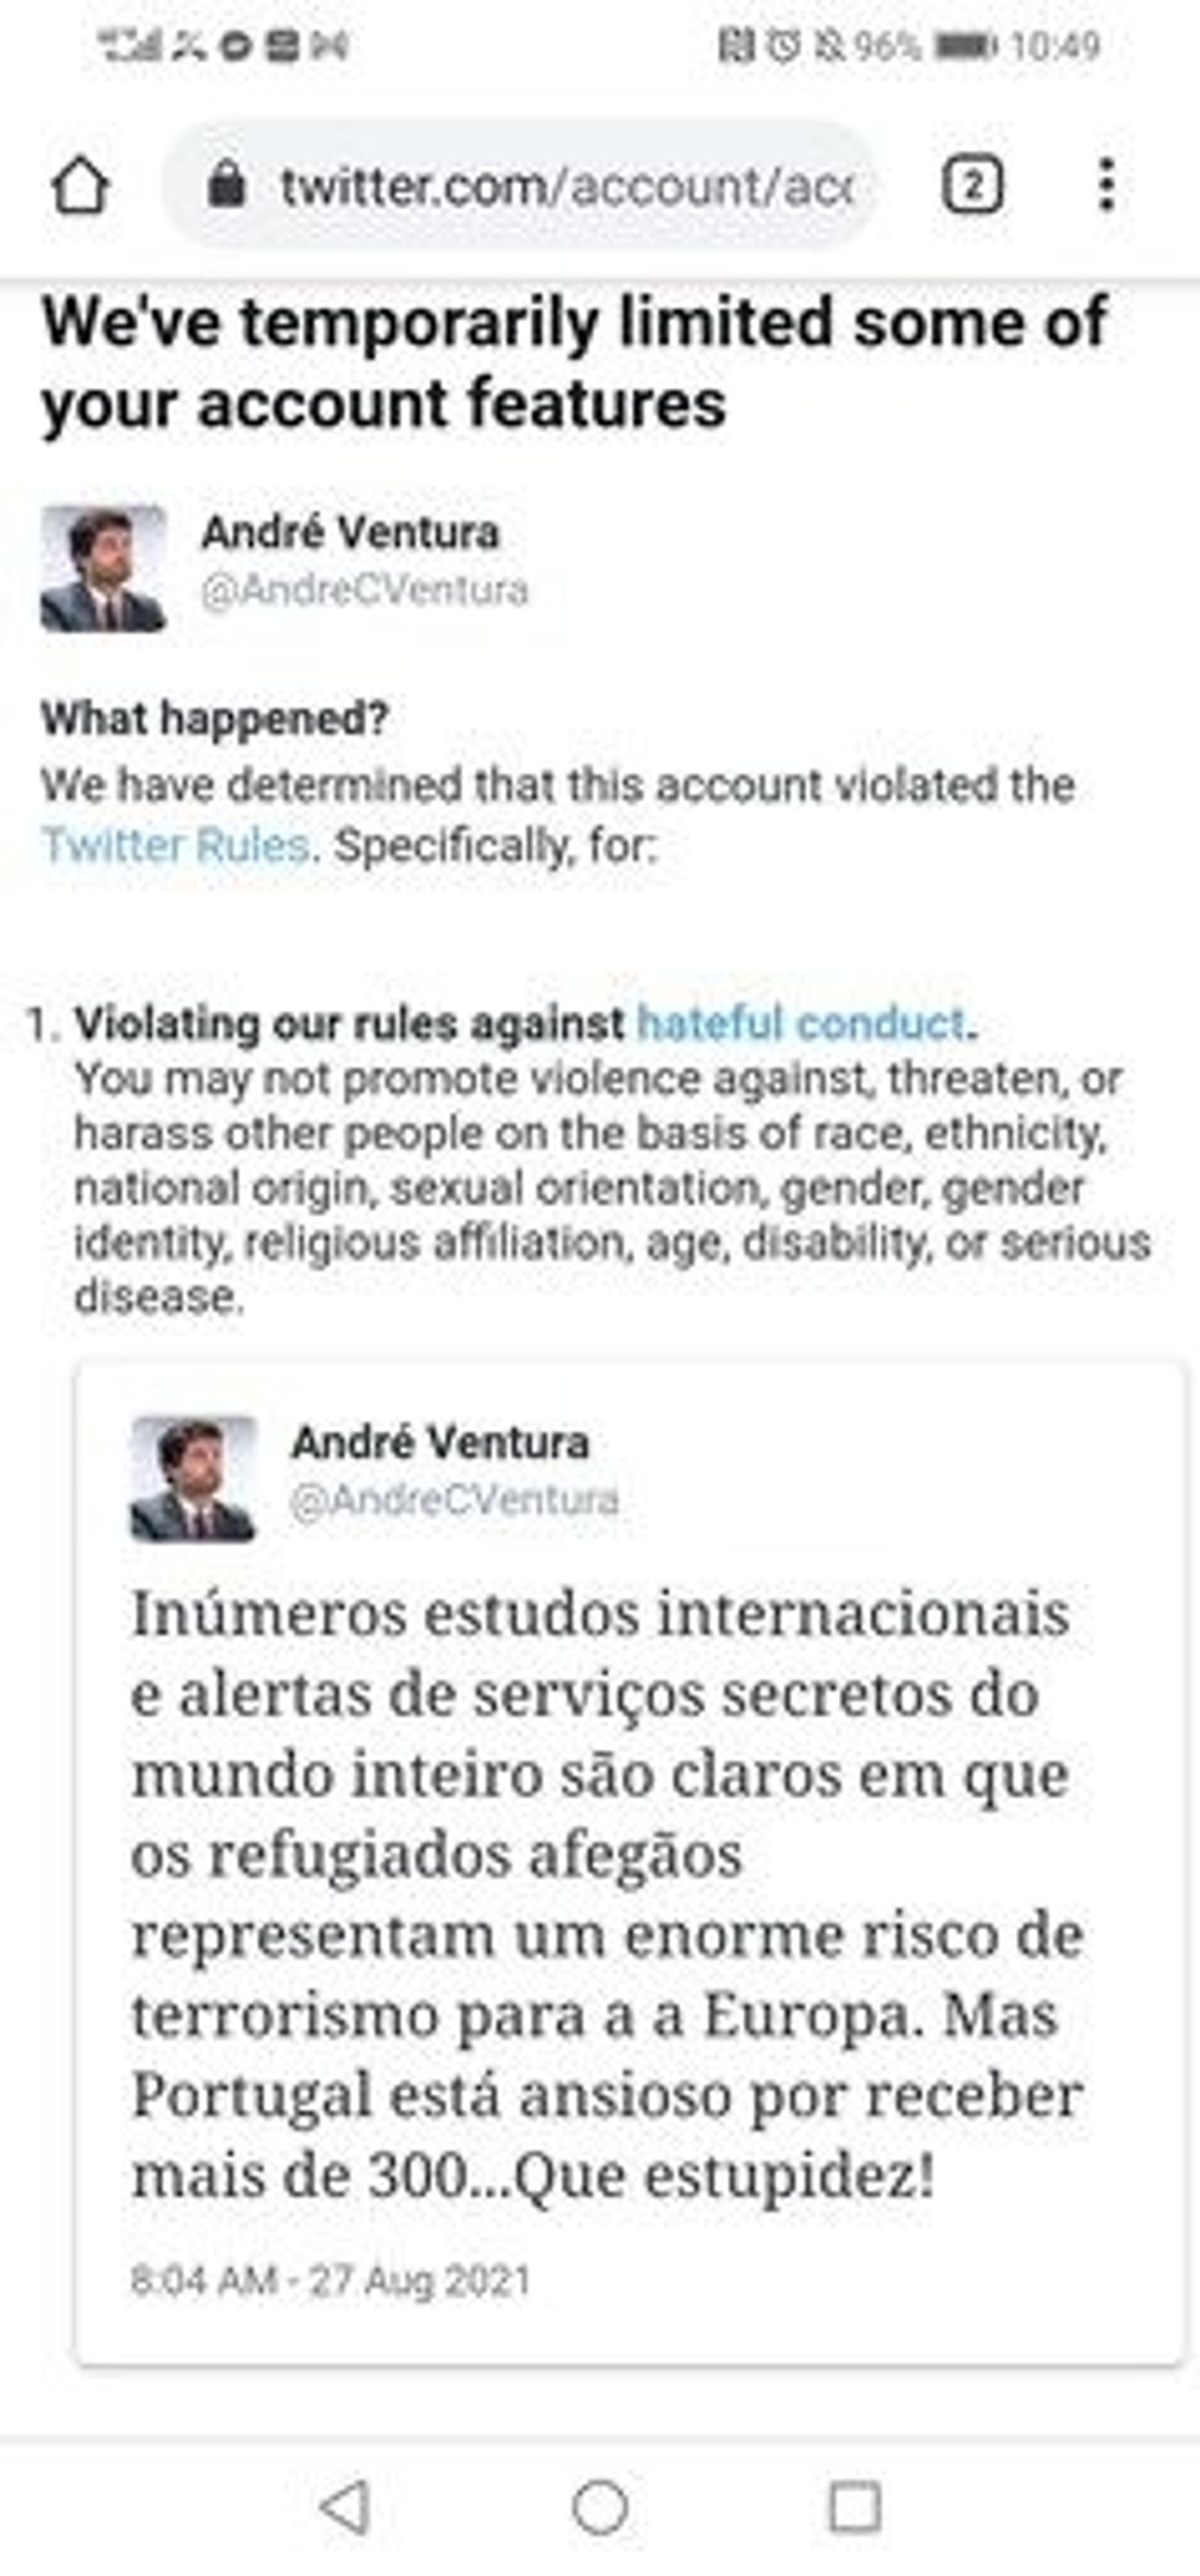 Por insinuar risco terrorista de afegãos, Twitter suspende conta de André Ventura, mas não do Talibã - Sputnik Brasil, 1920, 31.08.2021